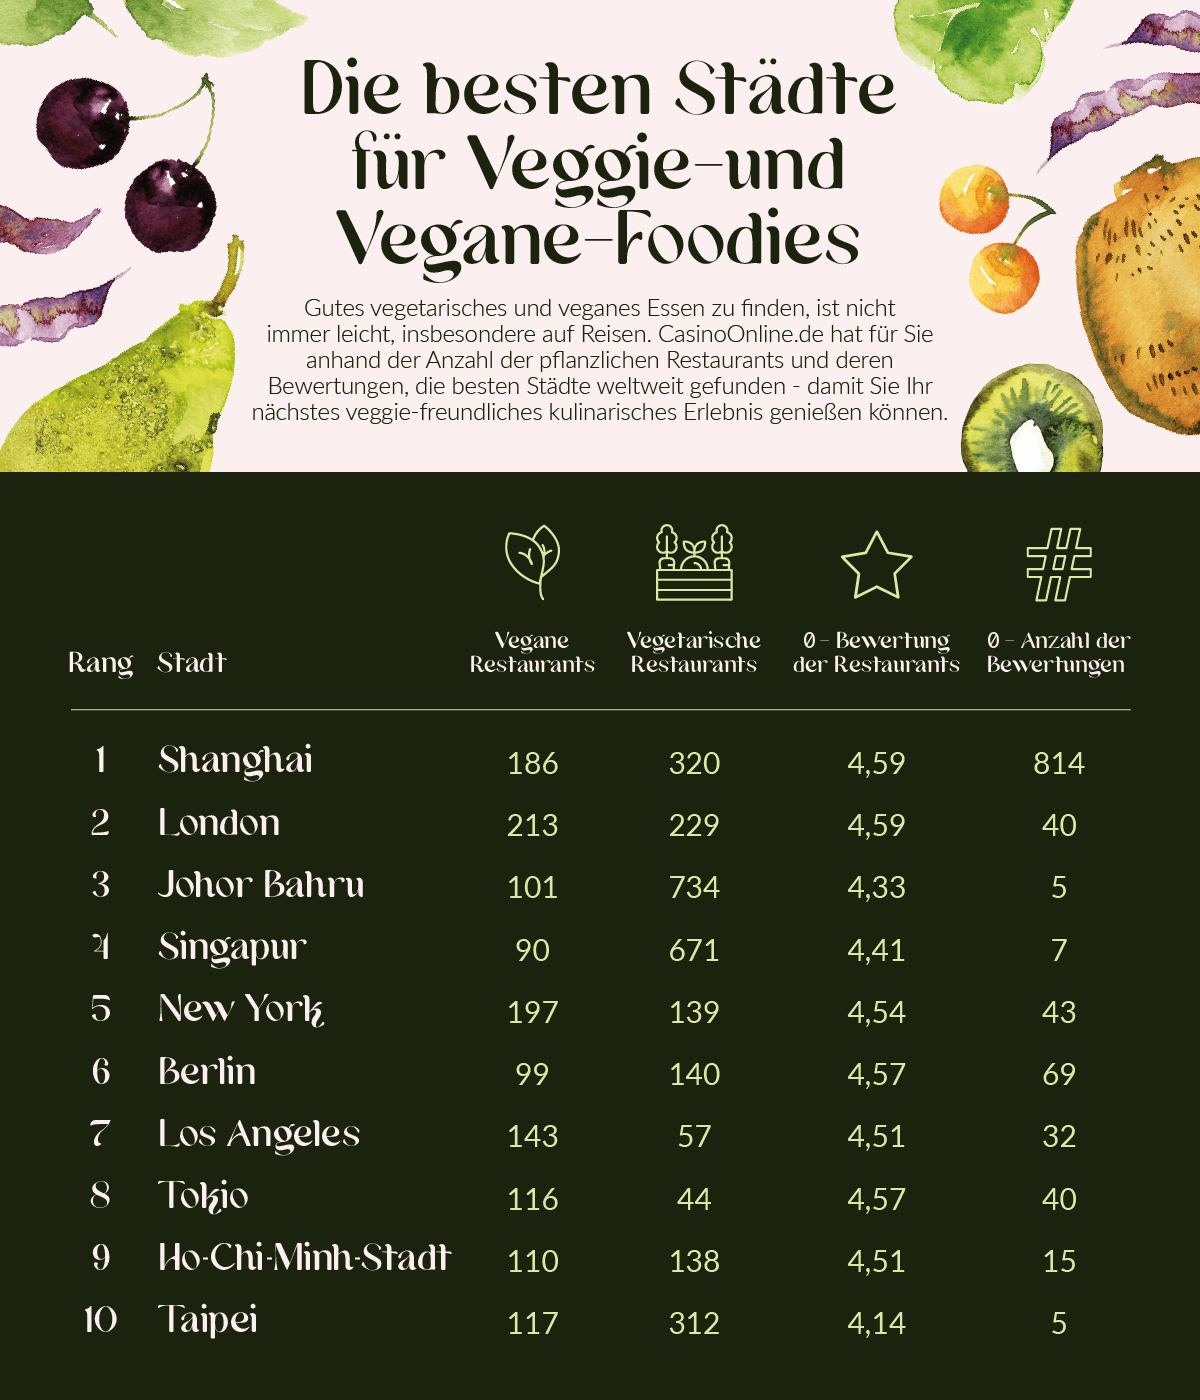 Die besten Städte für Vegane- und Vegetarische-Foodies